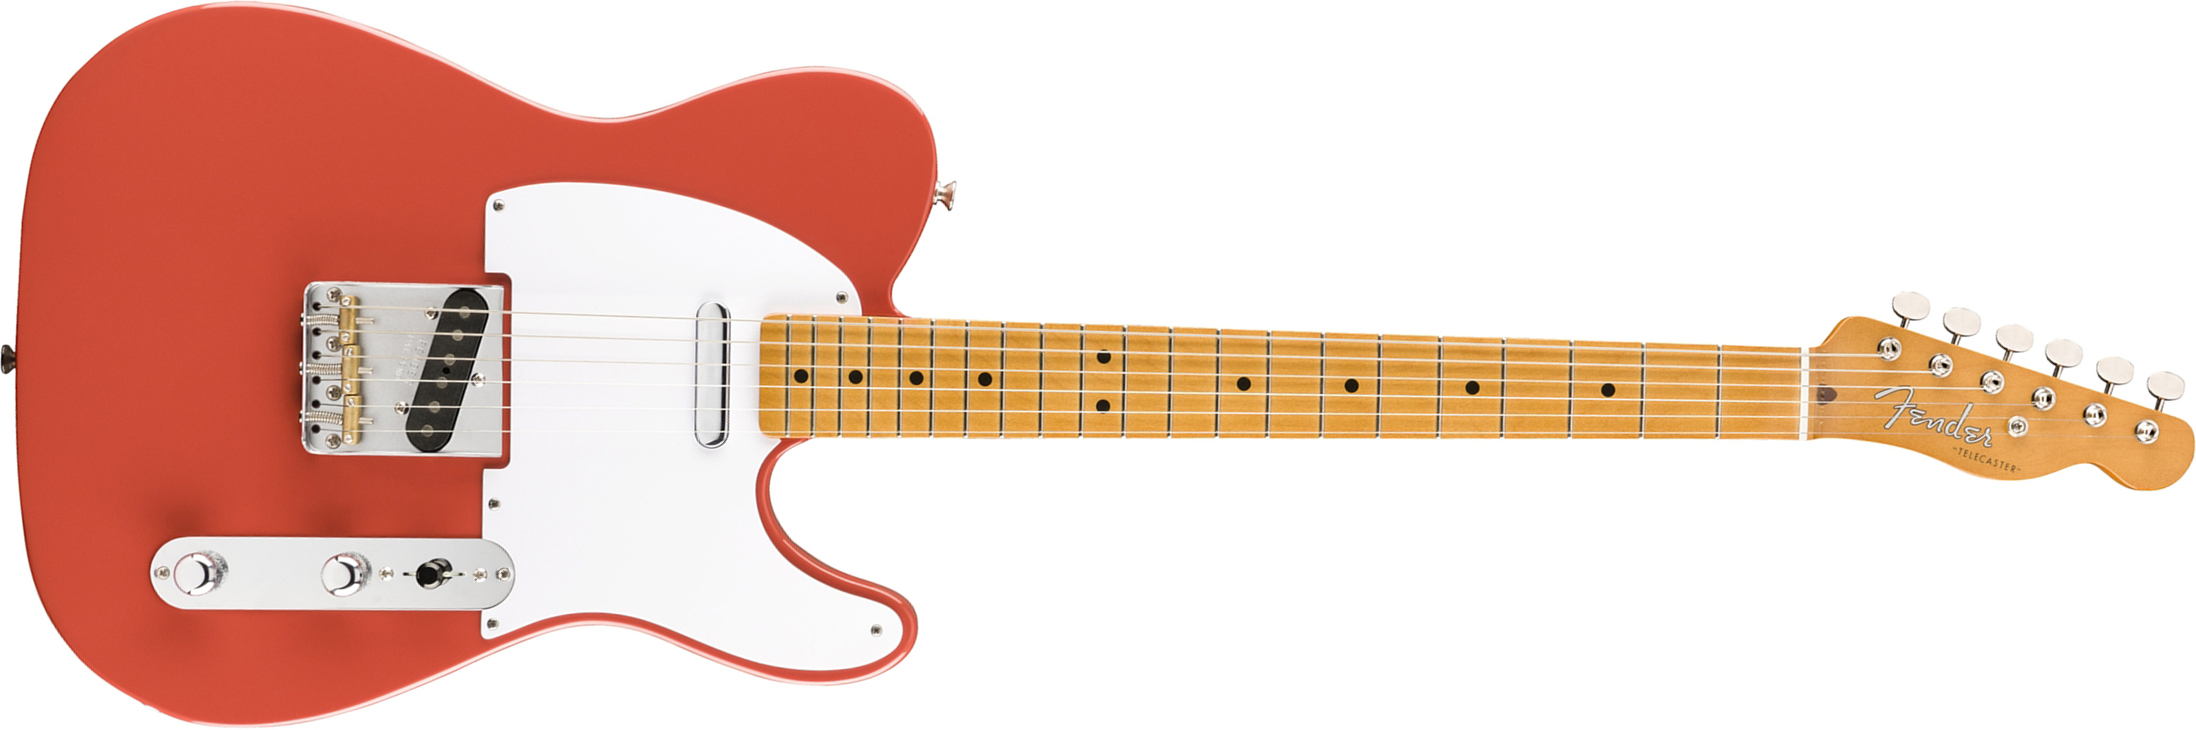 Fender Tele 50s Vintera Vintage Mex Mn - Fiesta Red - Guitarra eléctrica con forma de tel - Main picture